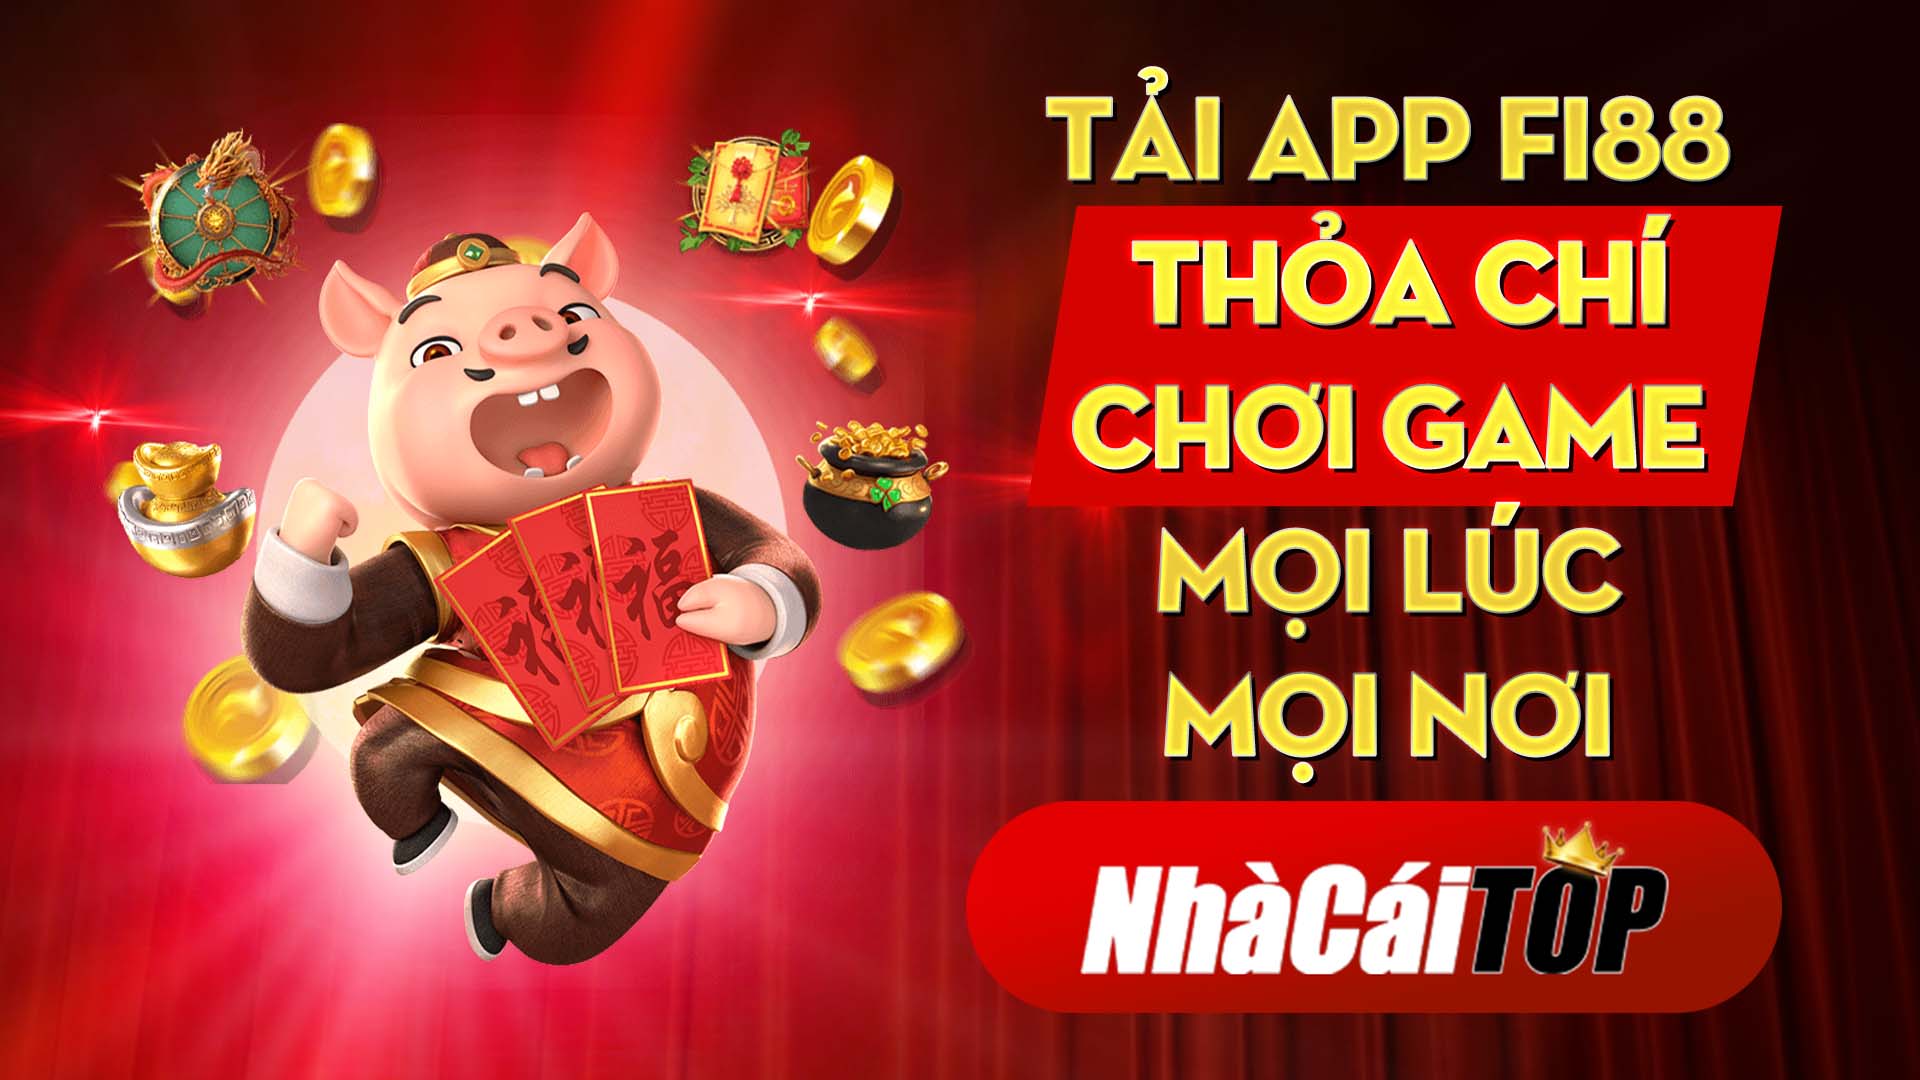 23 Tai App Fi88 – Thoa Chi Choi Game Moi Luc Moi Noi